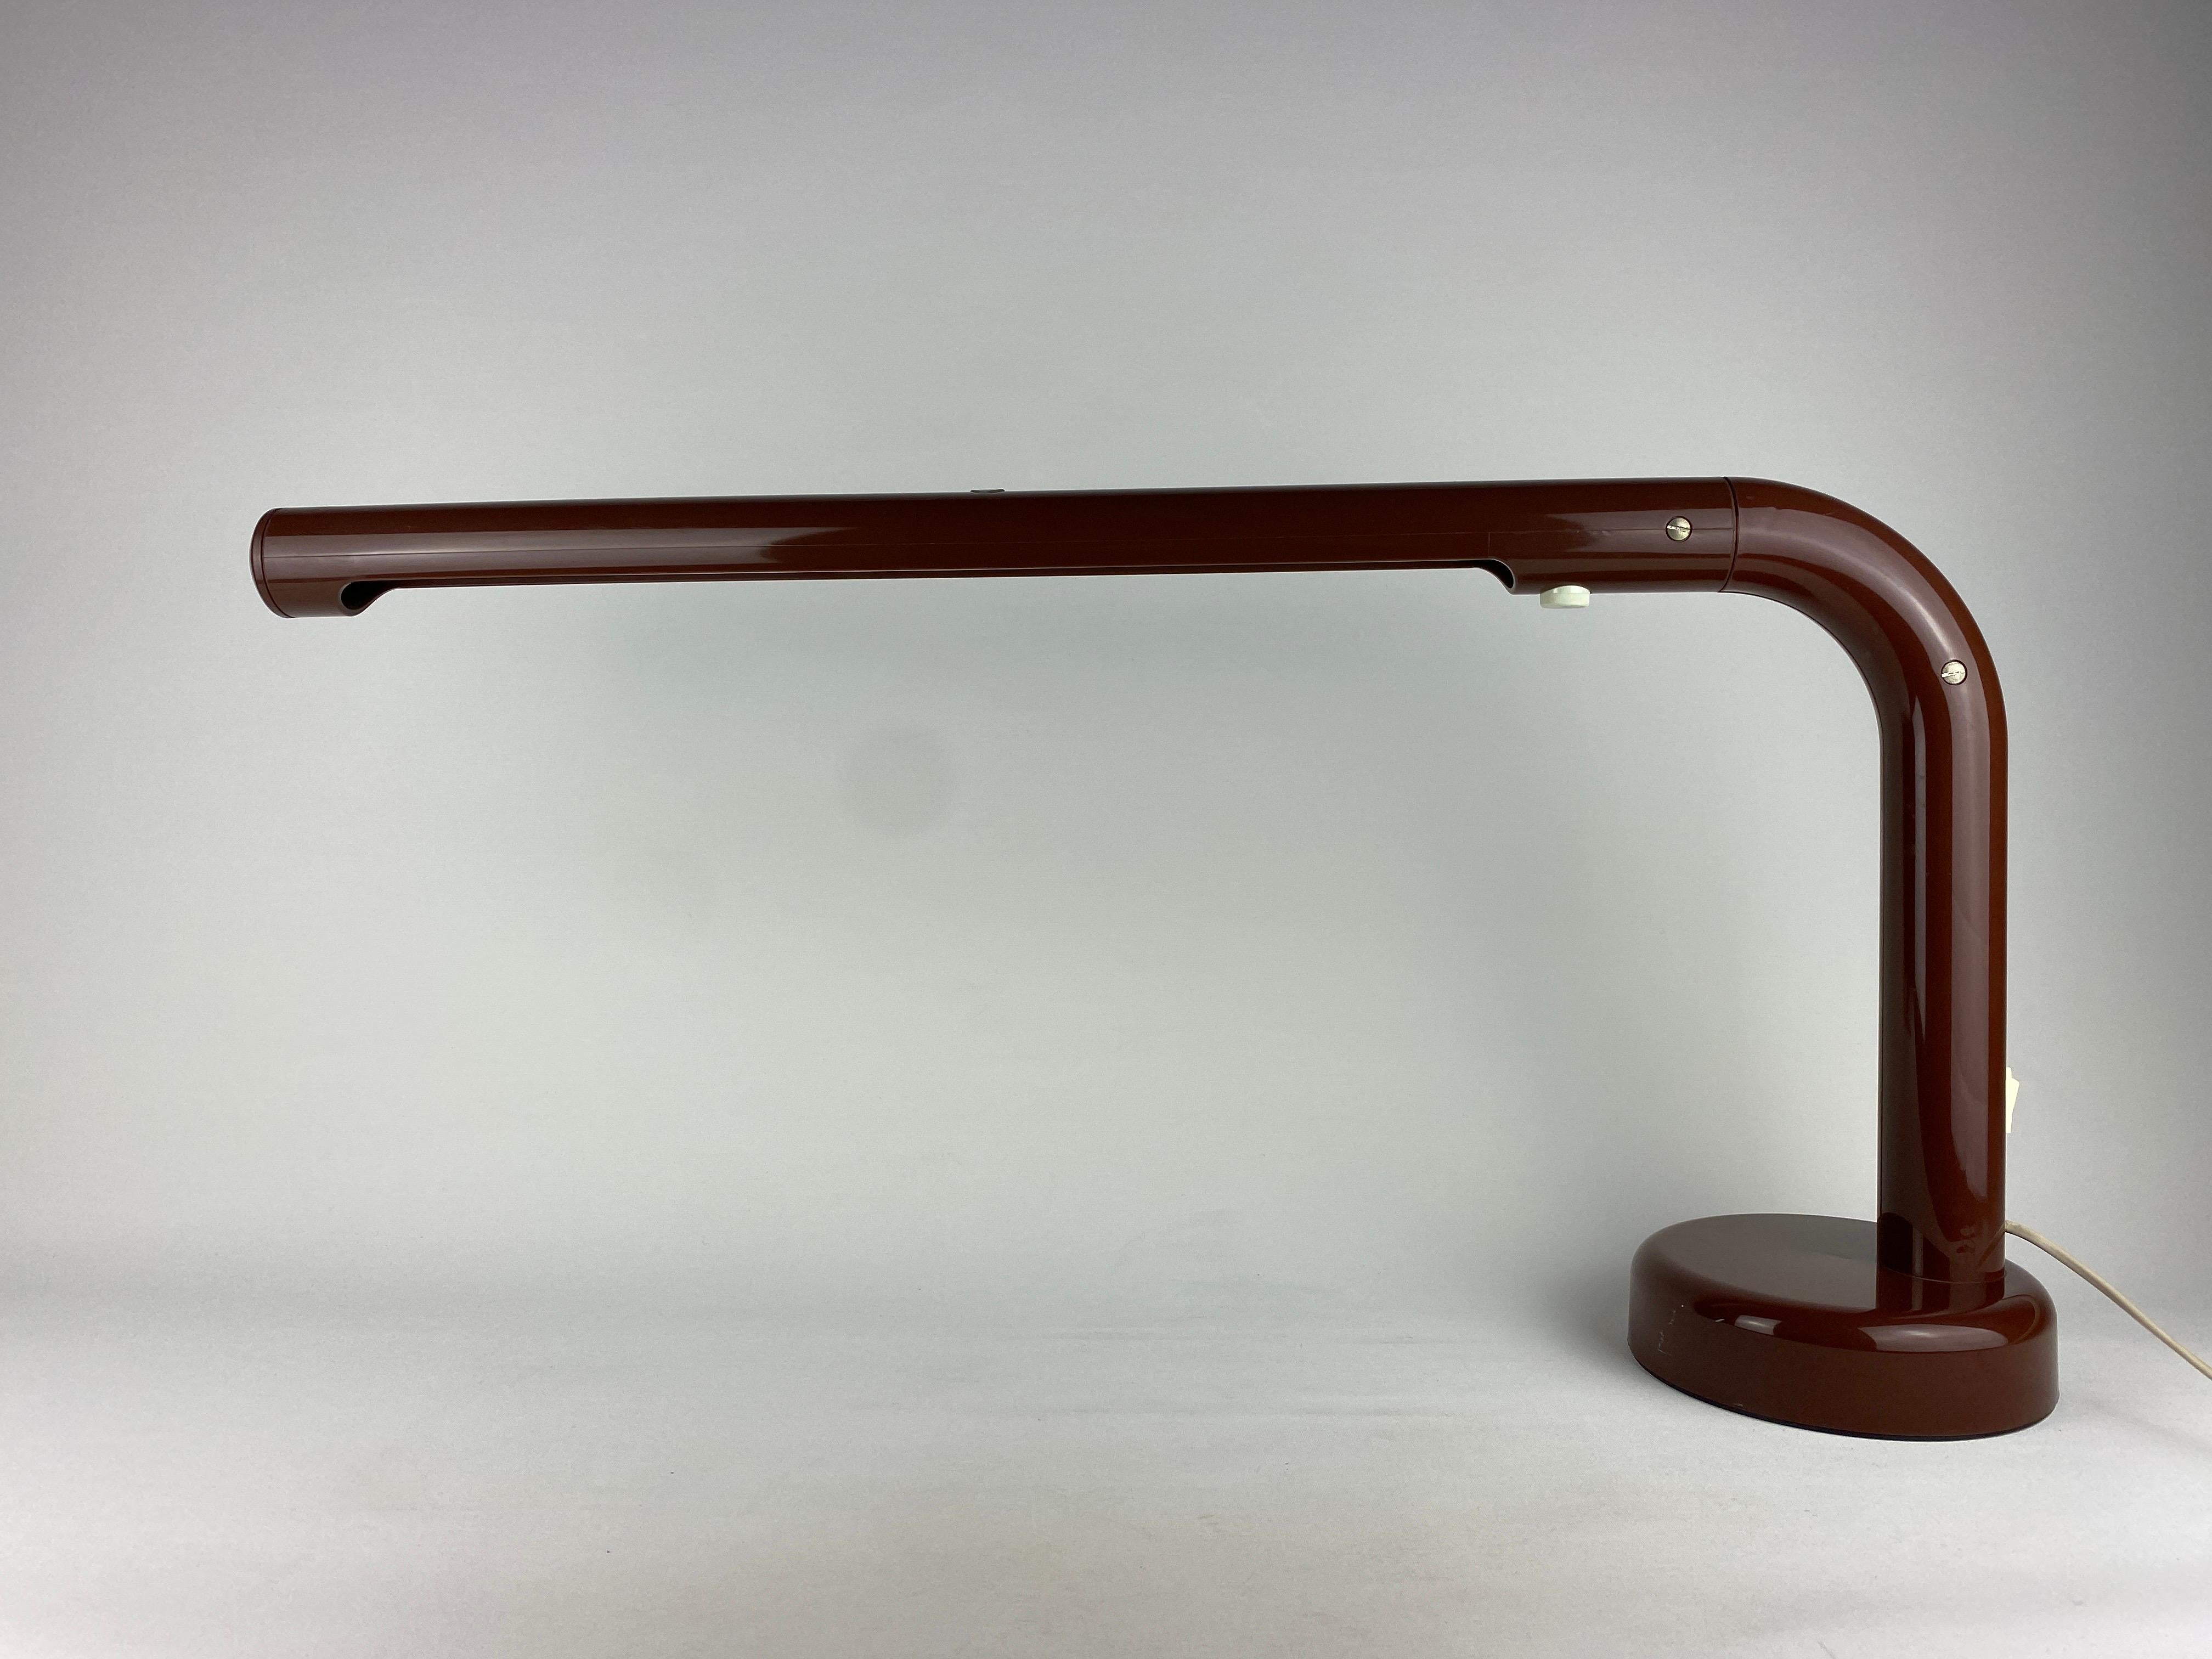 Lampe de bureau marron 'The Tube' conçue par Anders Pehrson pour Atelje Lyktan en 1973. 

Un design suédois classique des années 70. Un design épuré très cool qui s'intègre parfaitement dans un intérieur moderne mais aussi rétro grâce à sa